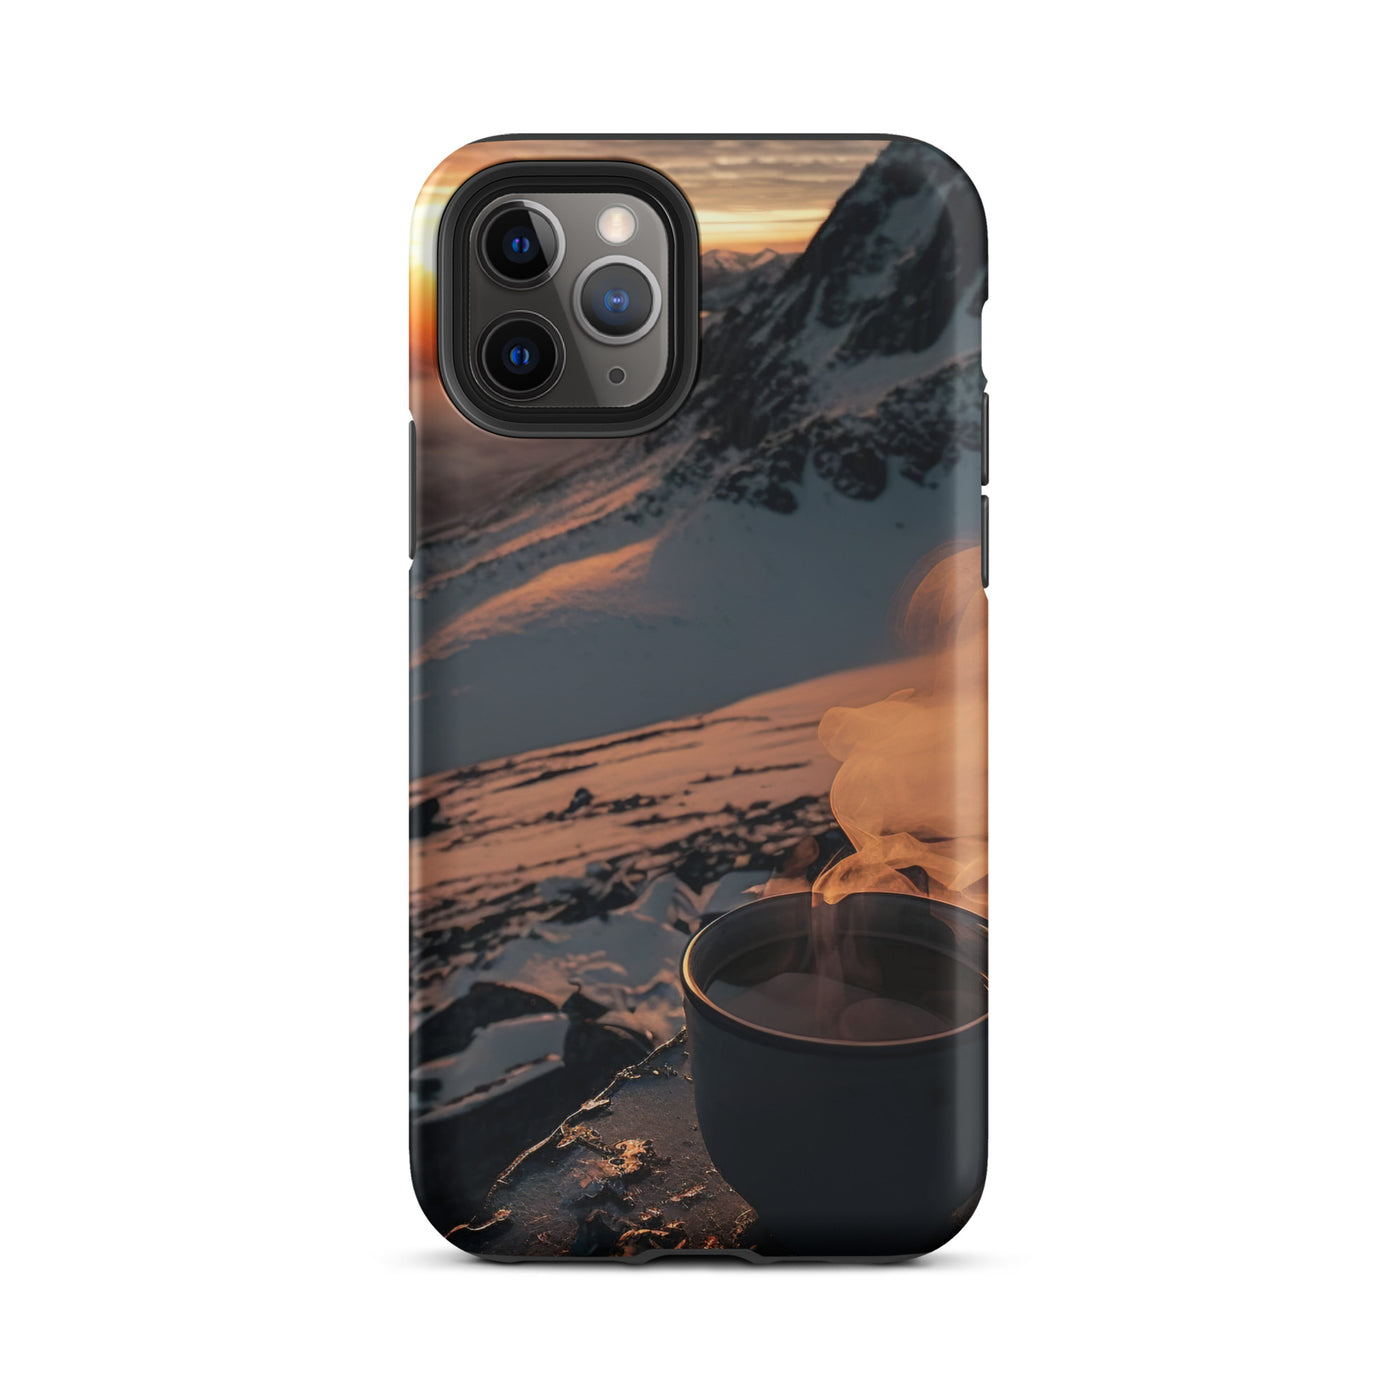 Heißer Kaffee auf einem schneebedeckten Berg - iPhone Schutzhülle (robust) berge xxx iPhone 11 Pro